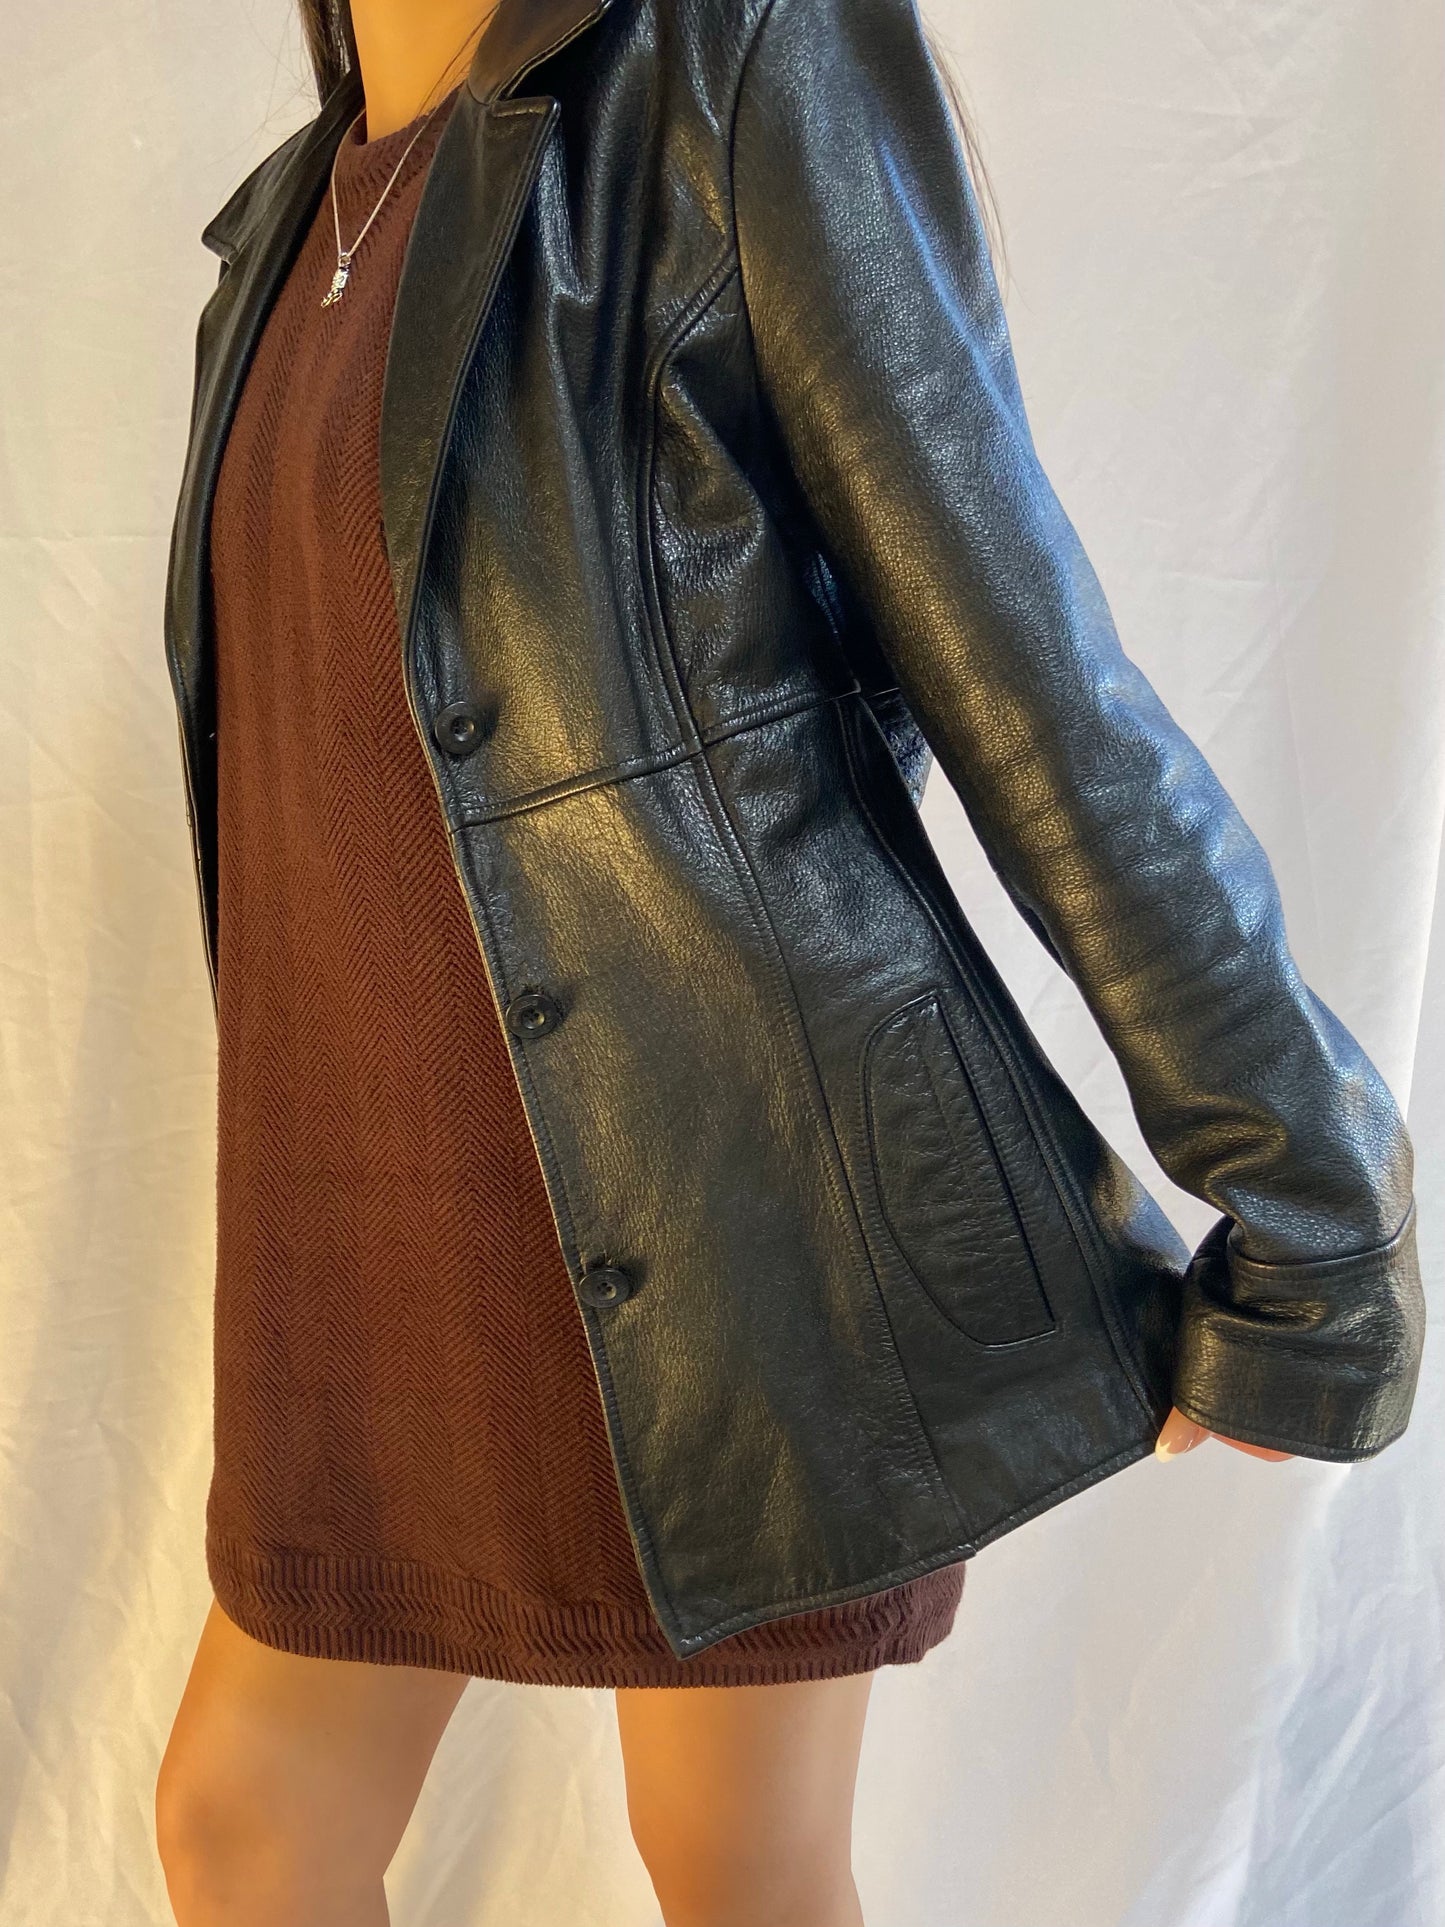 Black Wilsons Leather Jacket - Medium